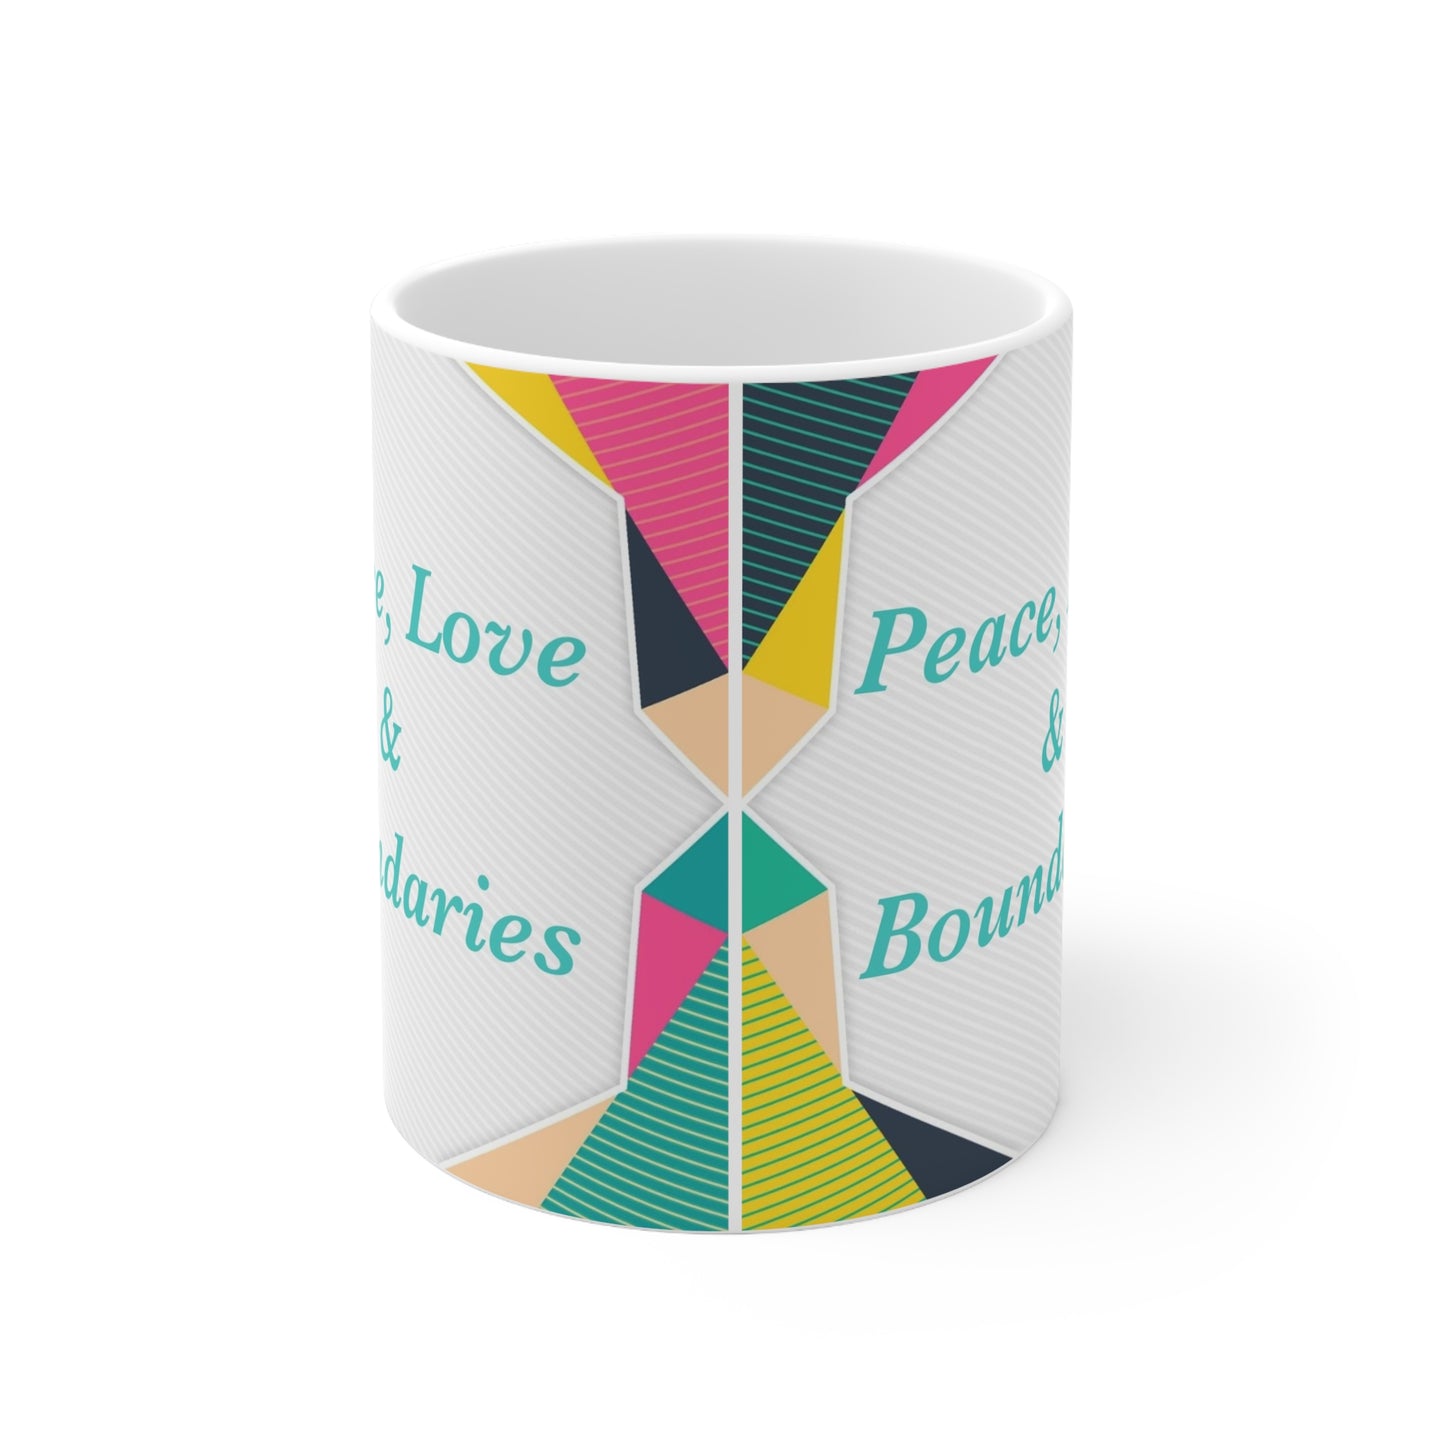 Peace, Love, & Boundaries mug